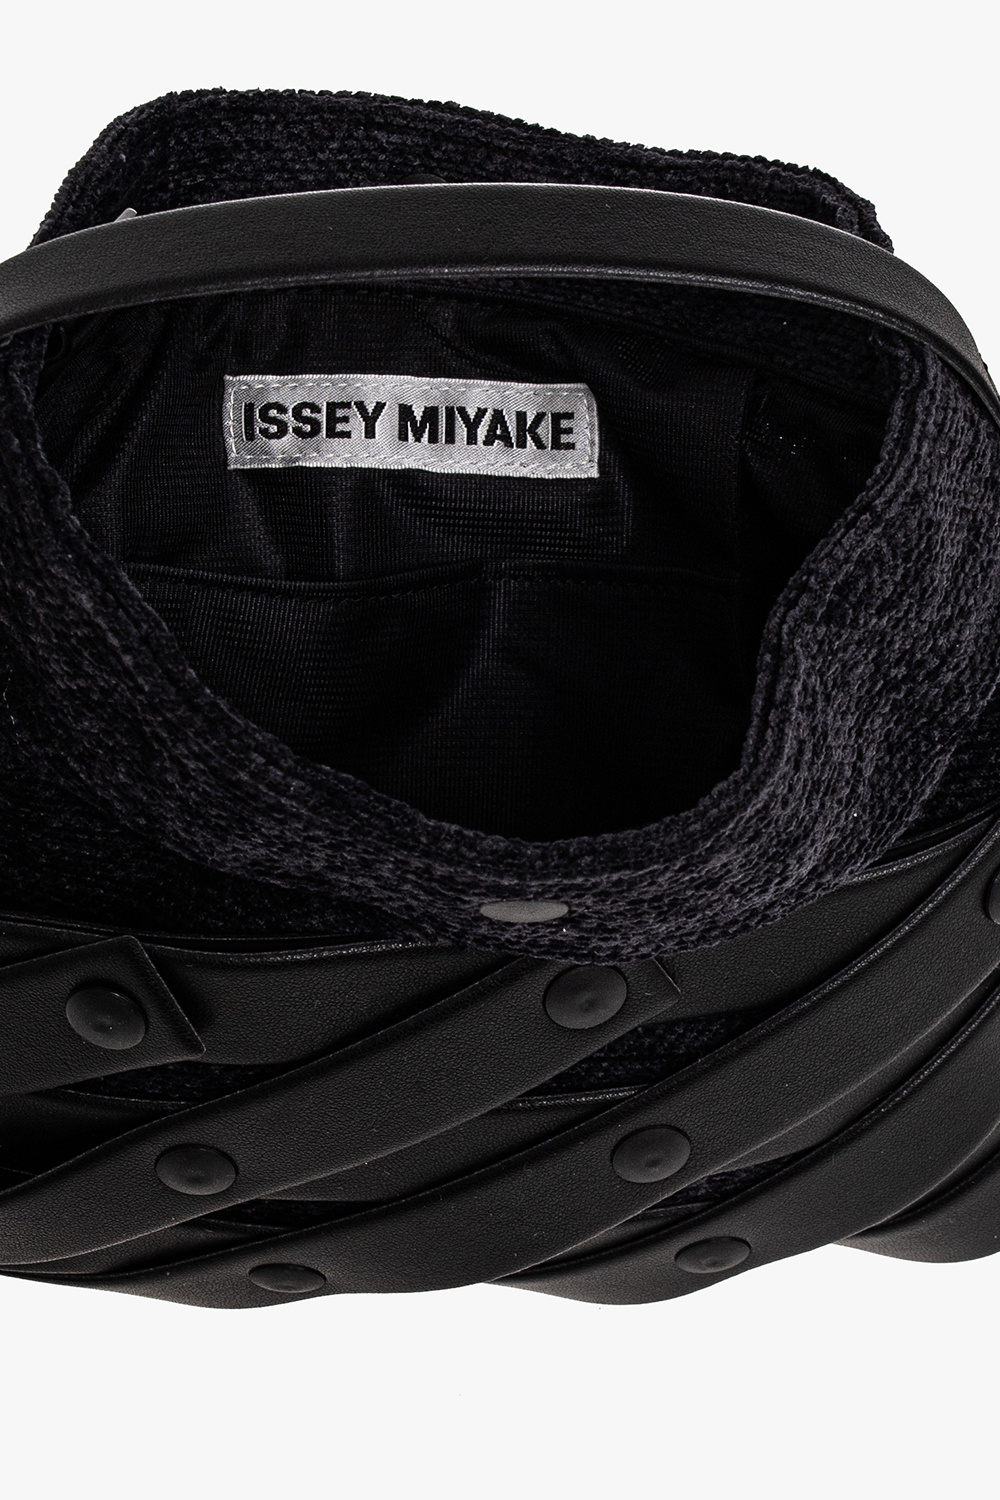 Issey Miyake Pleats Please ‘Spiral Grid’ shoulder AF2068 bag